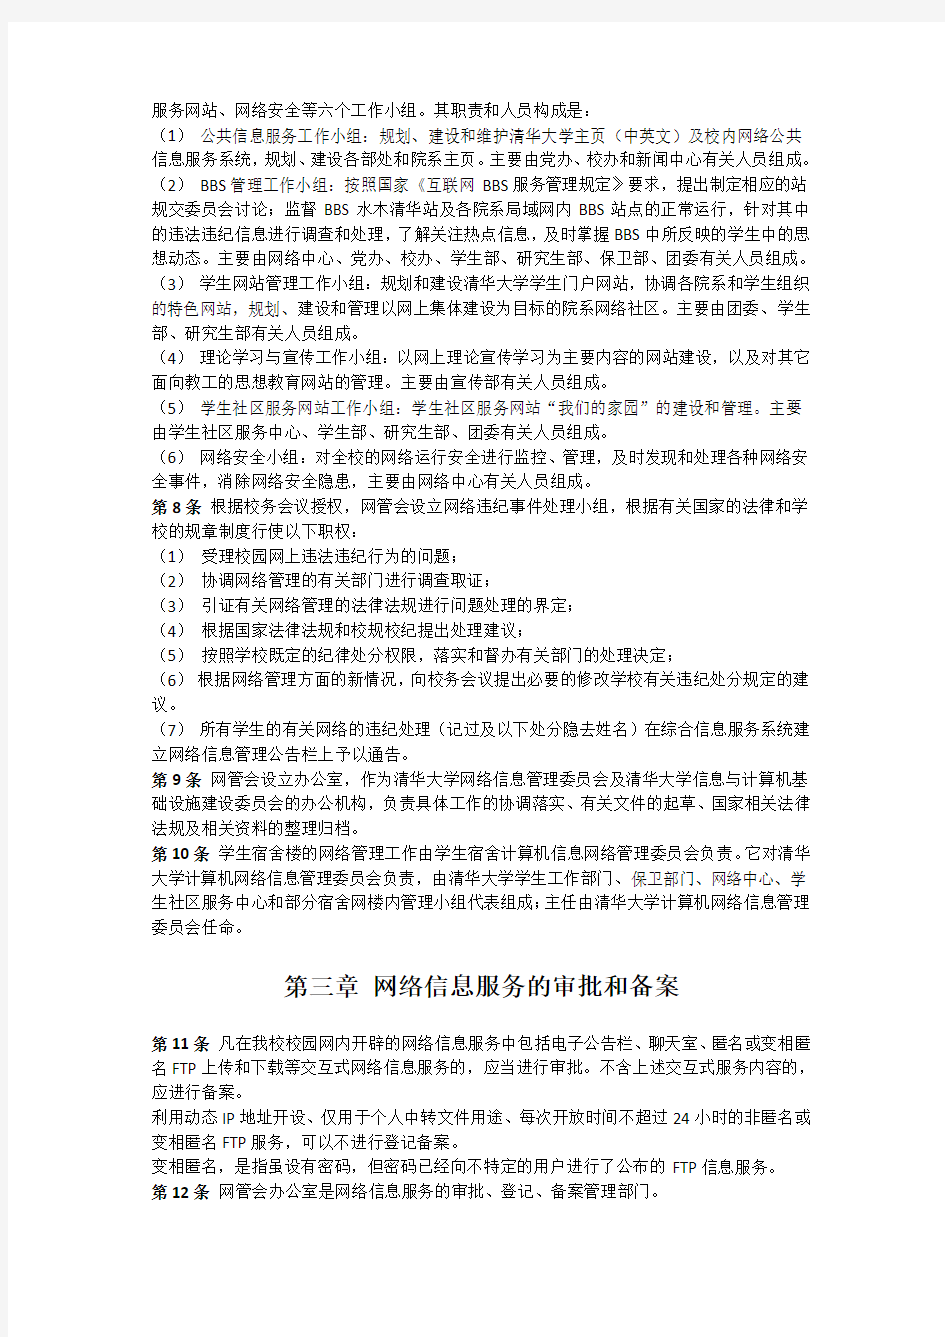 清华大学校园计算机网络信息服务管理办法(试行)